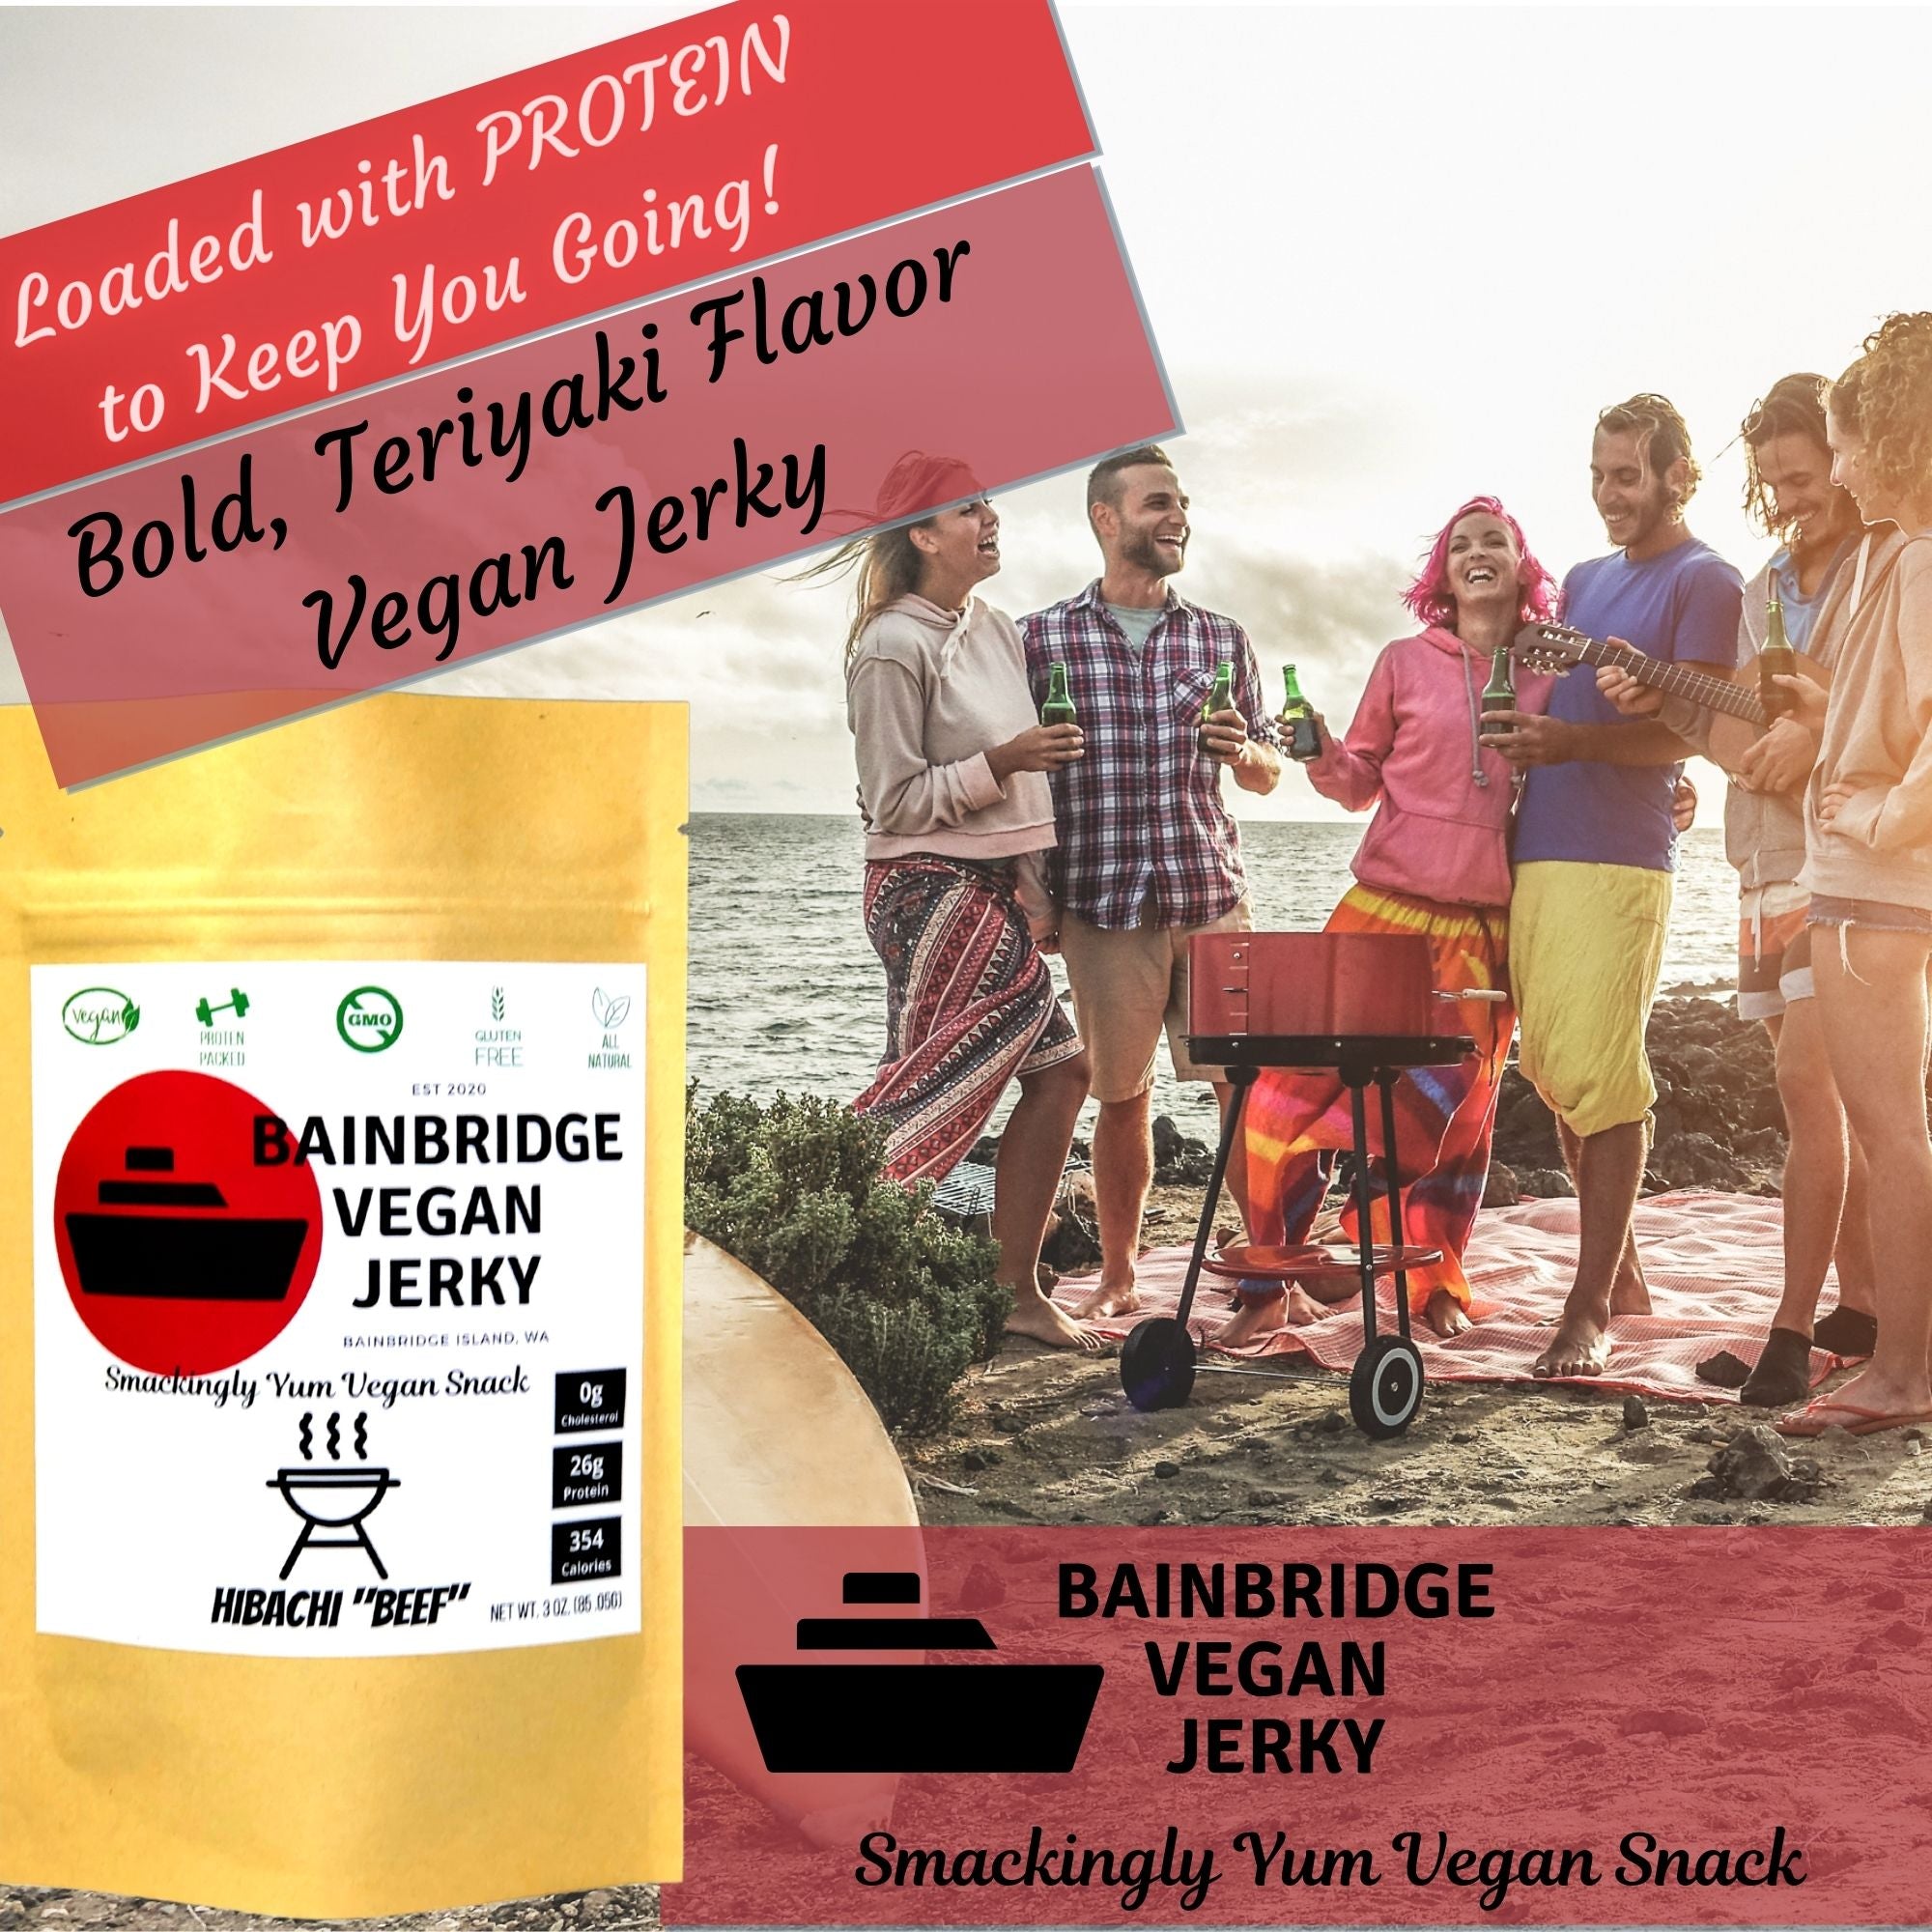 Bainbridge Vegan Jerky - Hibachi "Beef" Vegan Beef Jerky, 3 oz (Pack of 3)